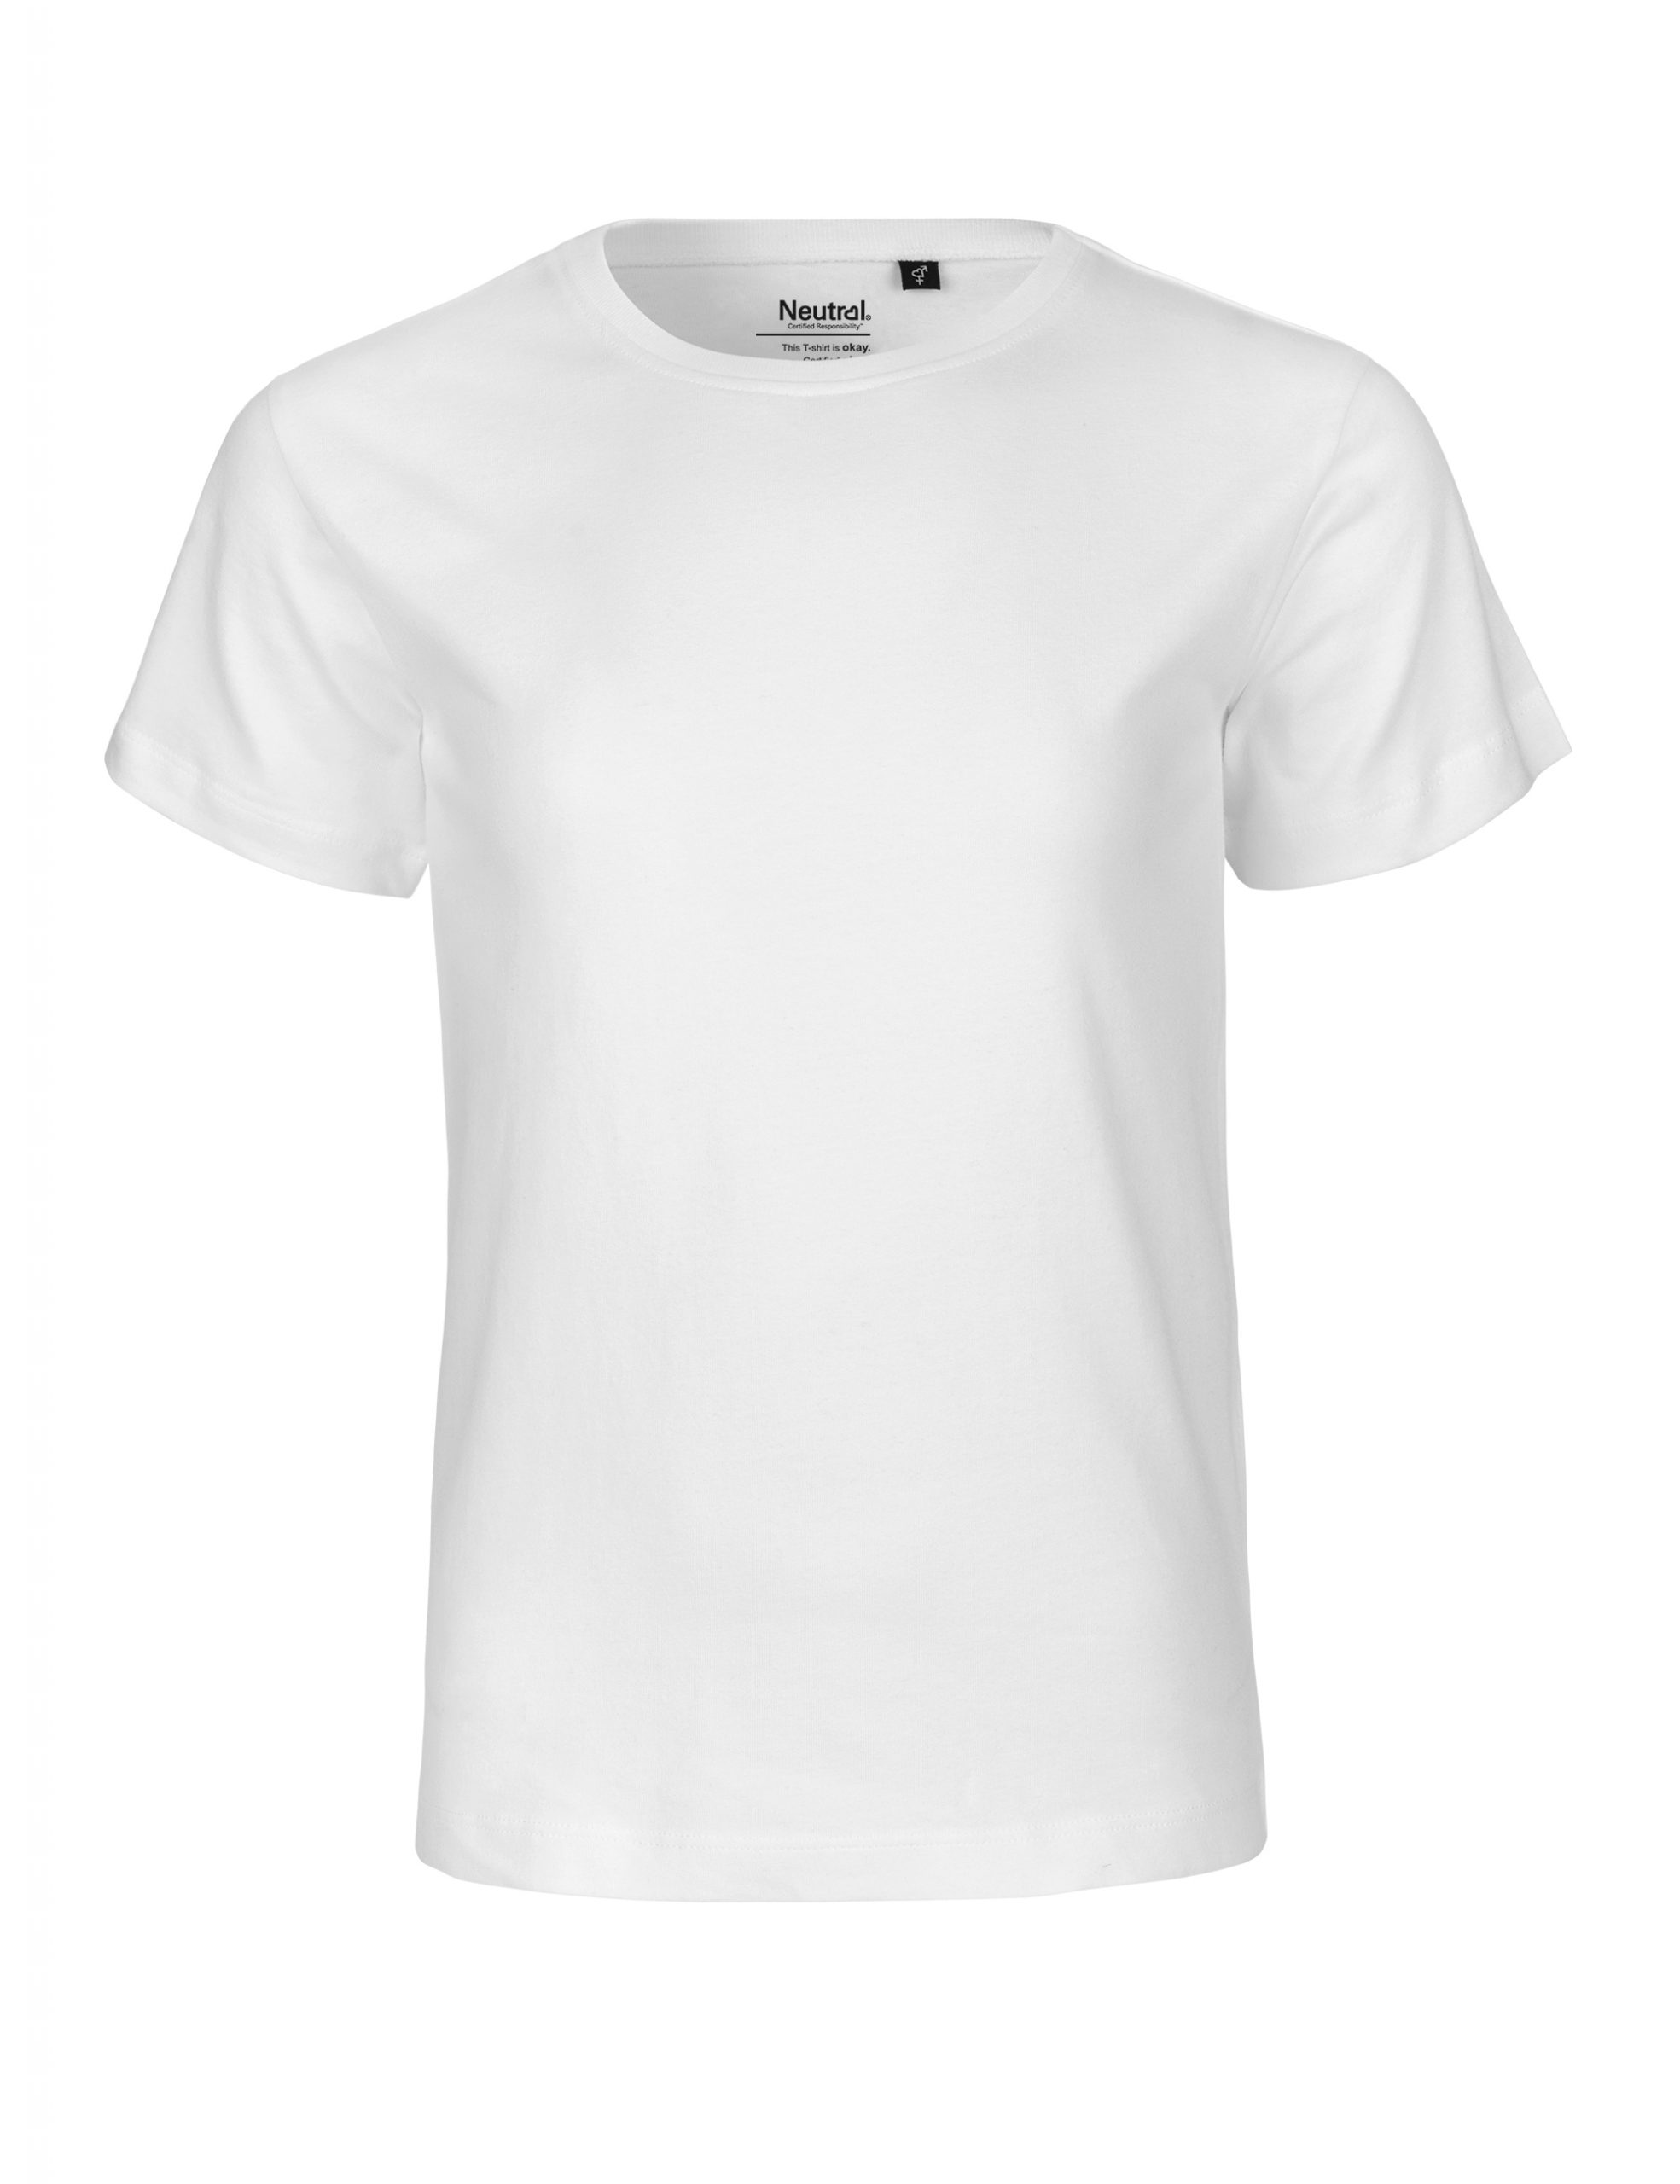 Neutral Kids T-shirt White